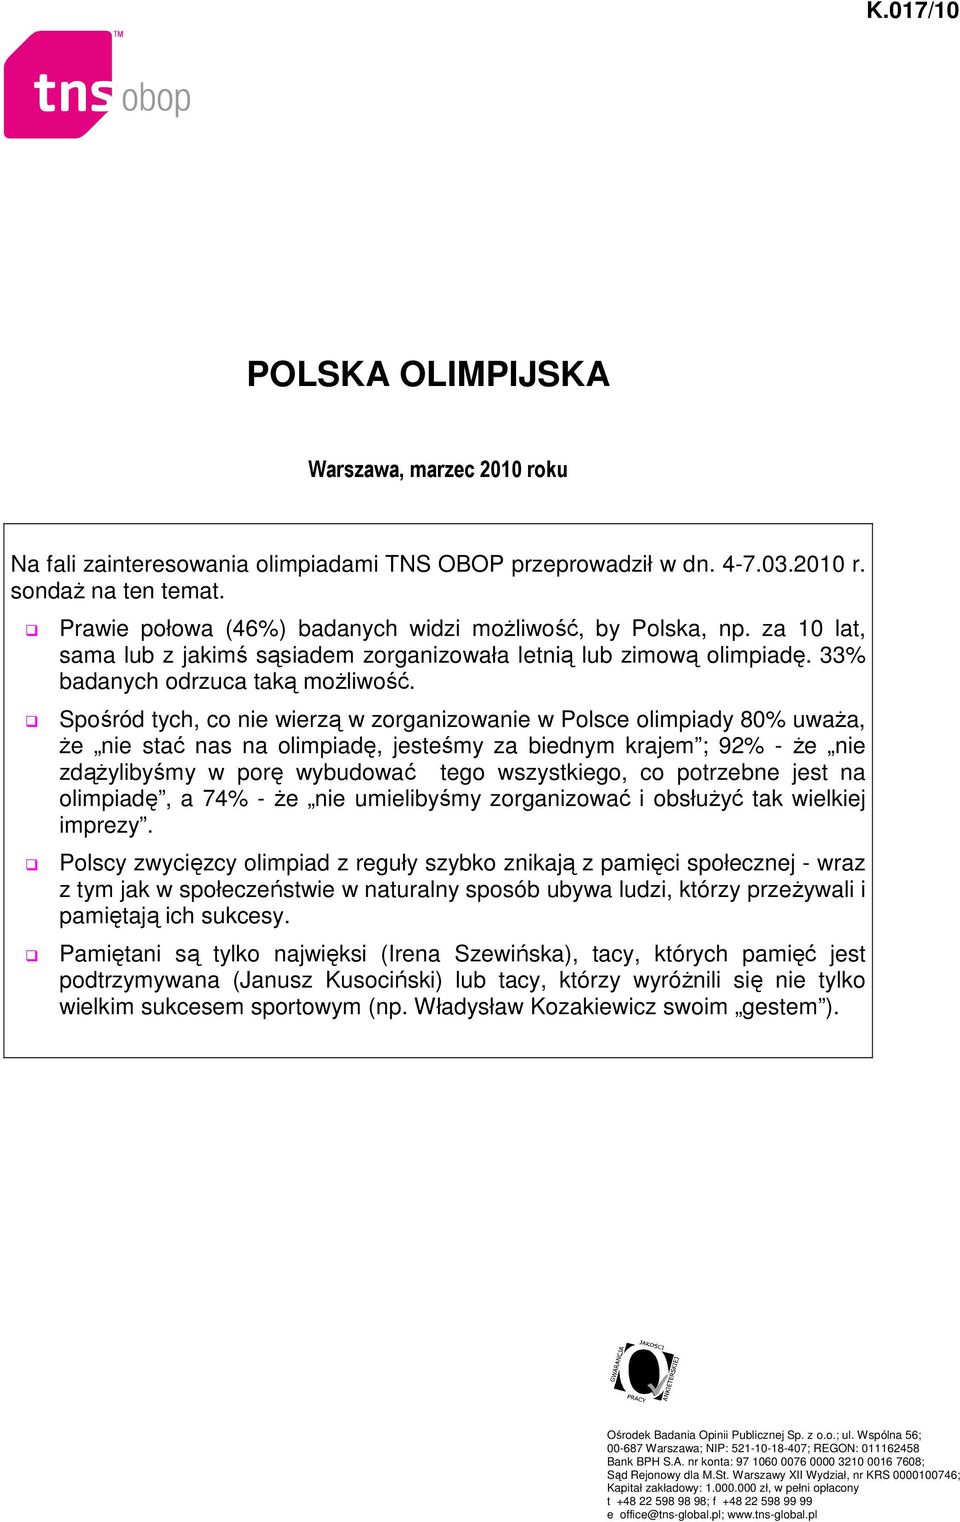 Spośród tych, co nie wierzą w zorganizowanie w Polsce olimpiady 80% uważa, że nie stać nas na olimpiadę, jesteśmy za biednym krajem ; 92% - że nie zdążylibyśmy w porę wybudować tego wszystkiego, co